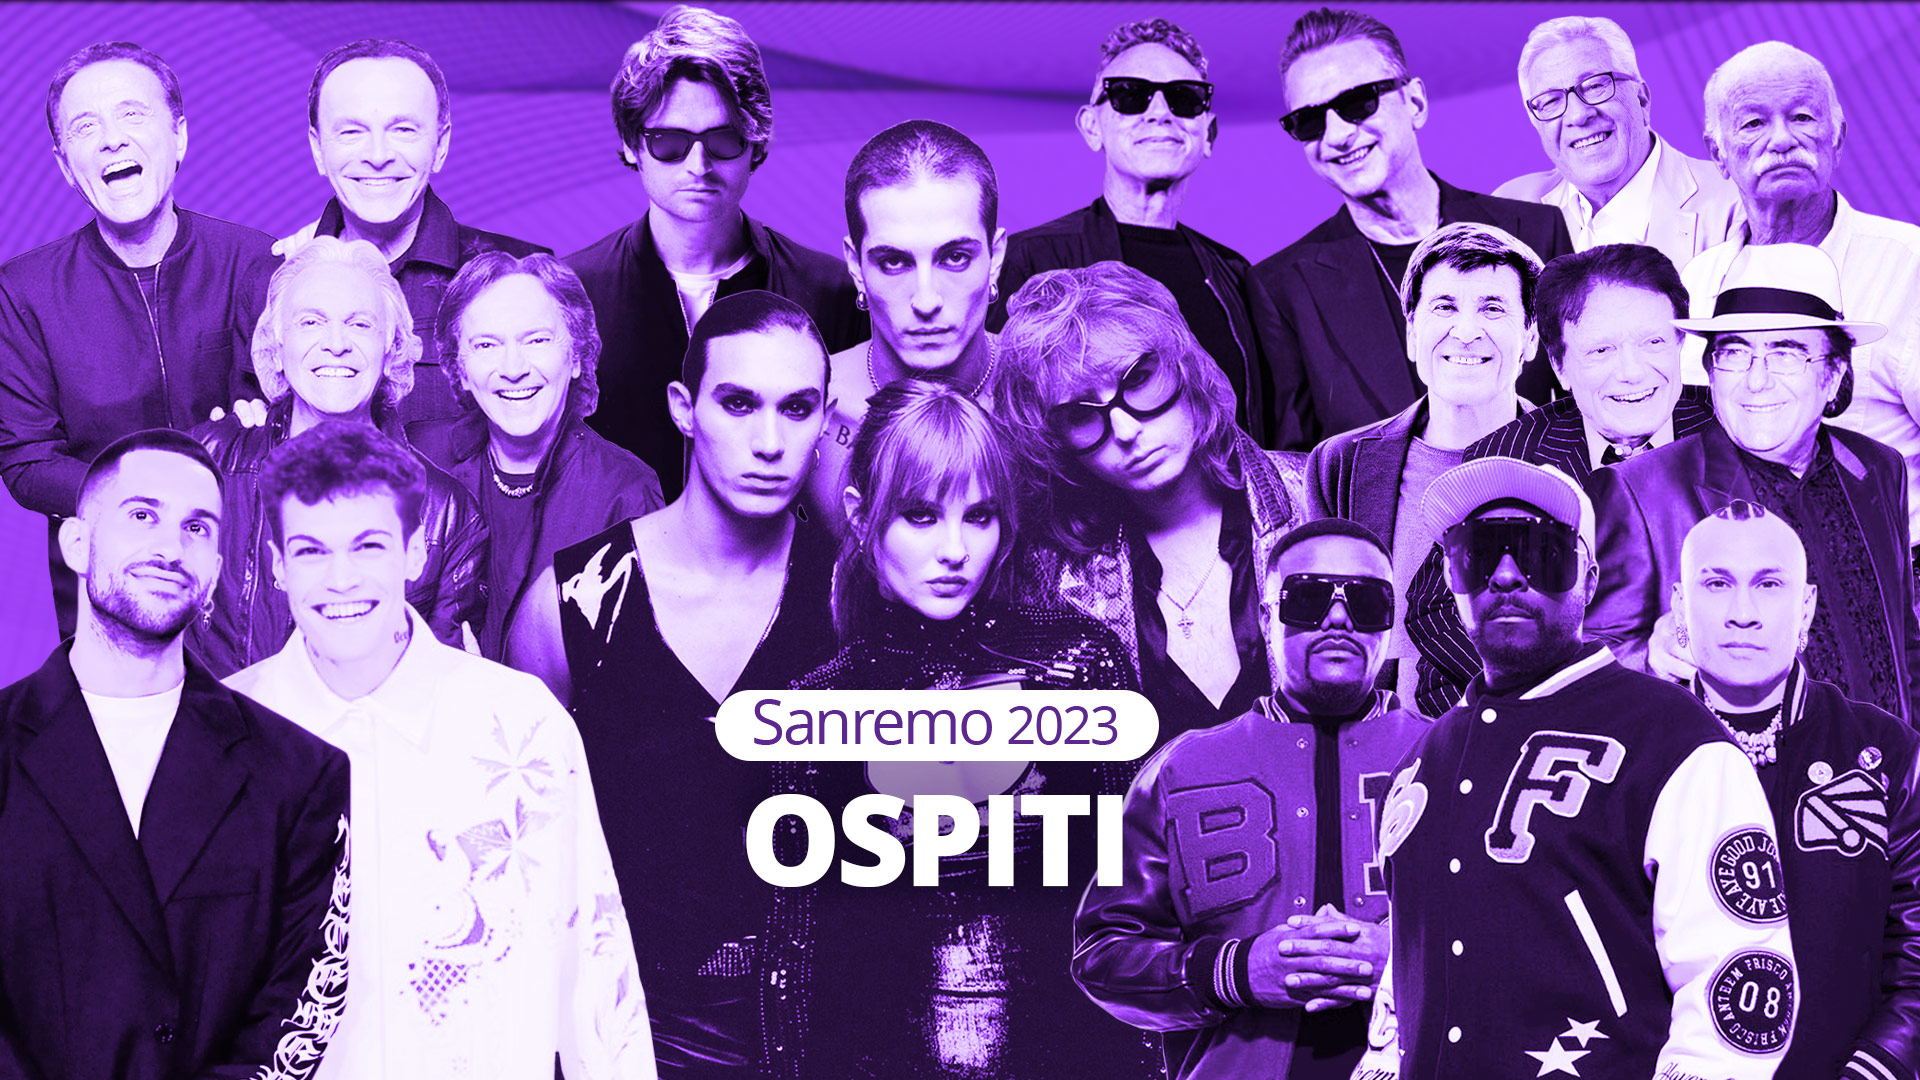 Sanremo 2023, definito il cast degli artisti. Ecco chi sono i 28 big